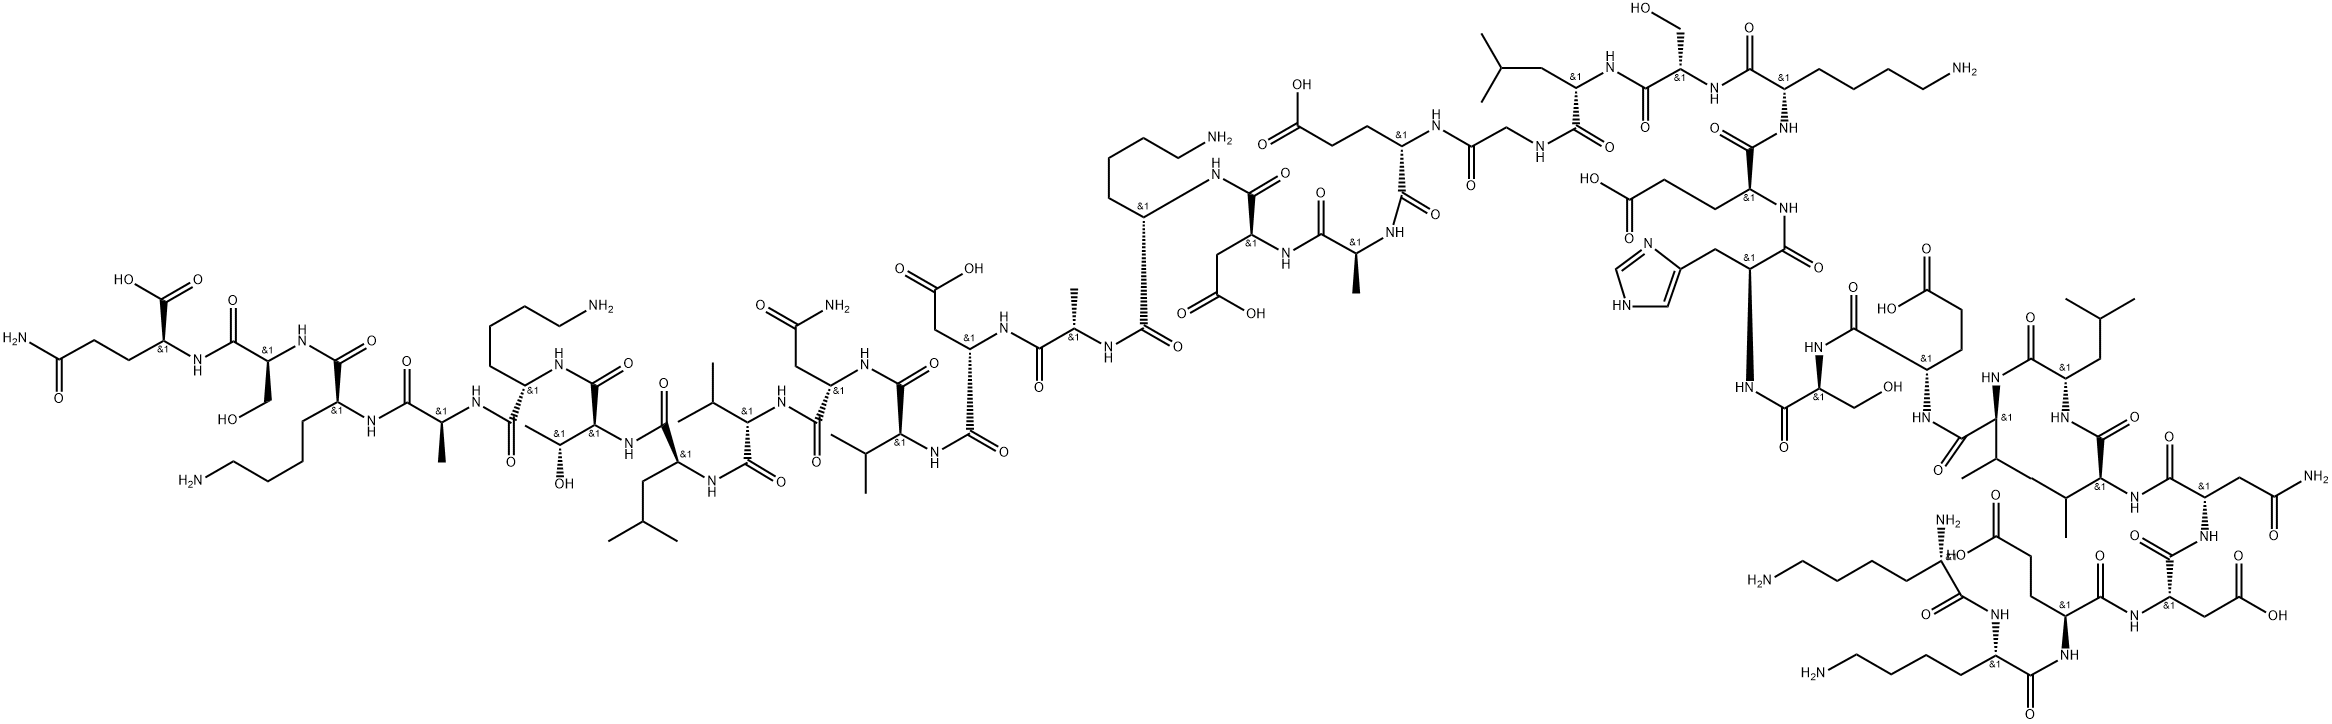 Полипептид 7. Ц пептид. Полипептид рисунок. Гексасульфоната проинсулина. Инсулин строение молекулы.